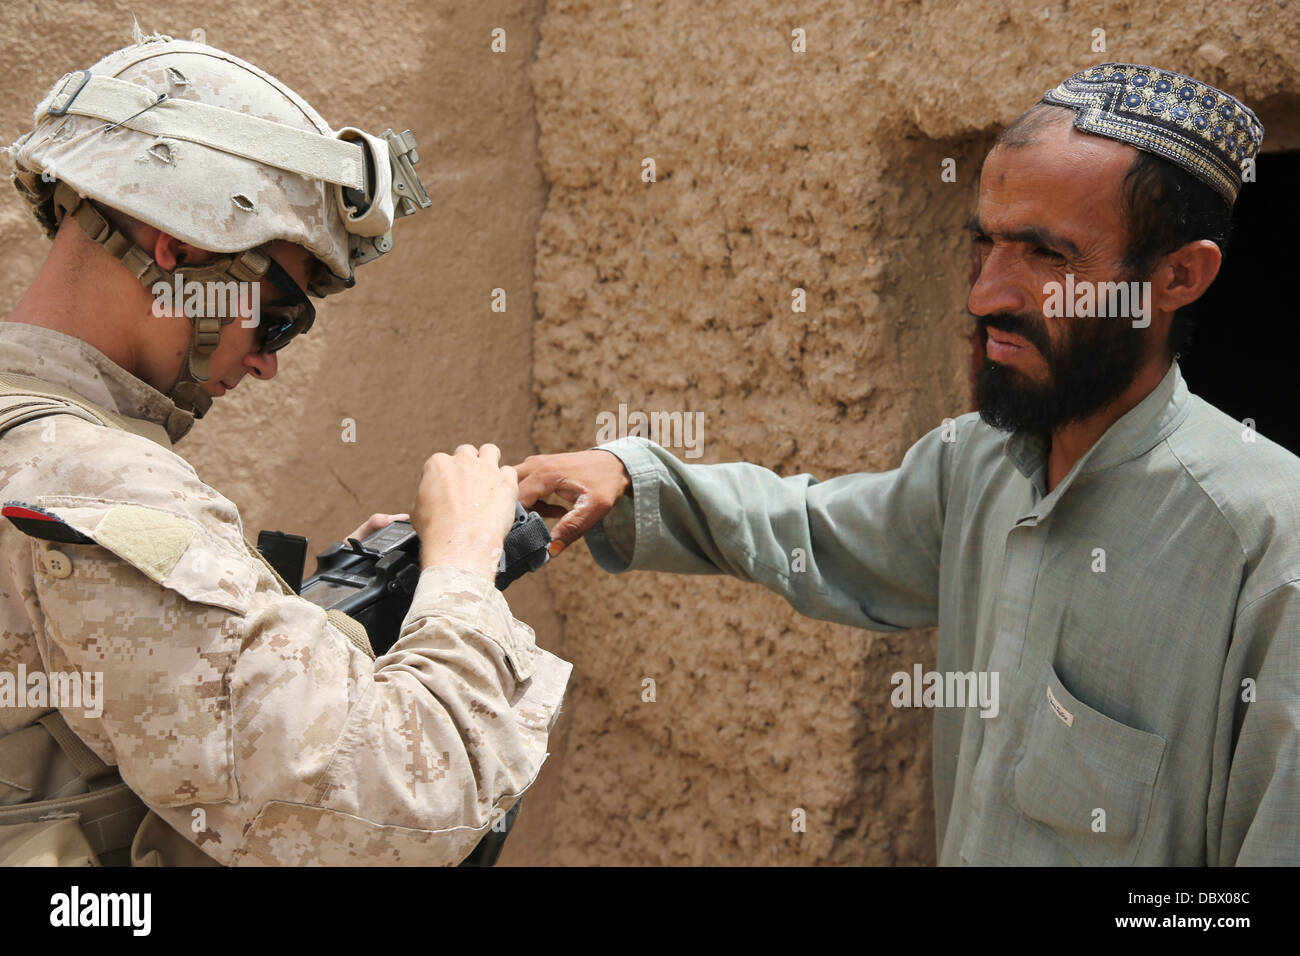 US Marine Corps Lance Cpl. Großbritannien Morris mit Fox Company sammelt Informationen von einem afghanischen Mann mit einer sicheren elektronischen Einschreibung Baukastensystem während einer Patrouille 29. Juli 2013 in Washir, Provinz Helmand, Afghanistan. Stockfoto